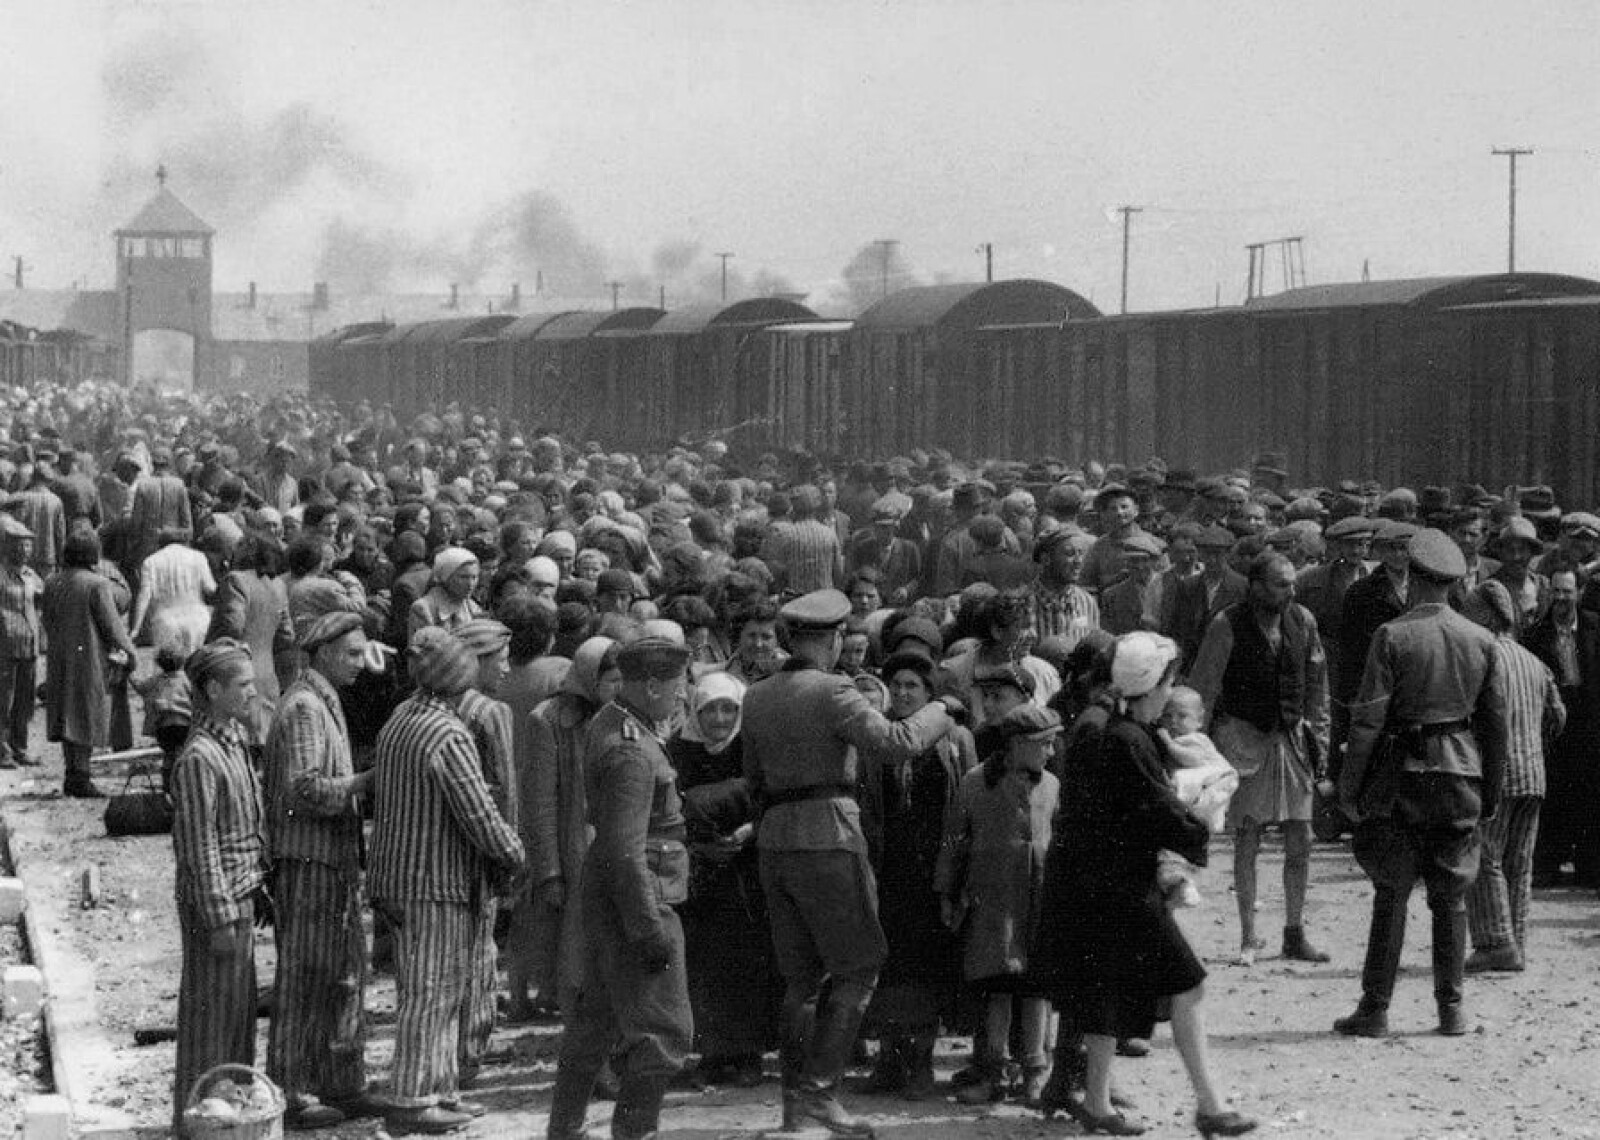 <span class=bold>AUSCHWITZ</span> Irma Grese ble kjent skyldig i personlig å skyte fanger som prøvde å gjemme seg når seleksjonene til gasskammeret ble utført i Auschwitz.